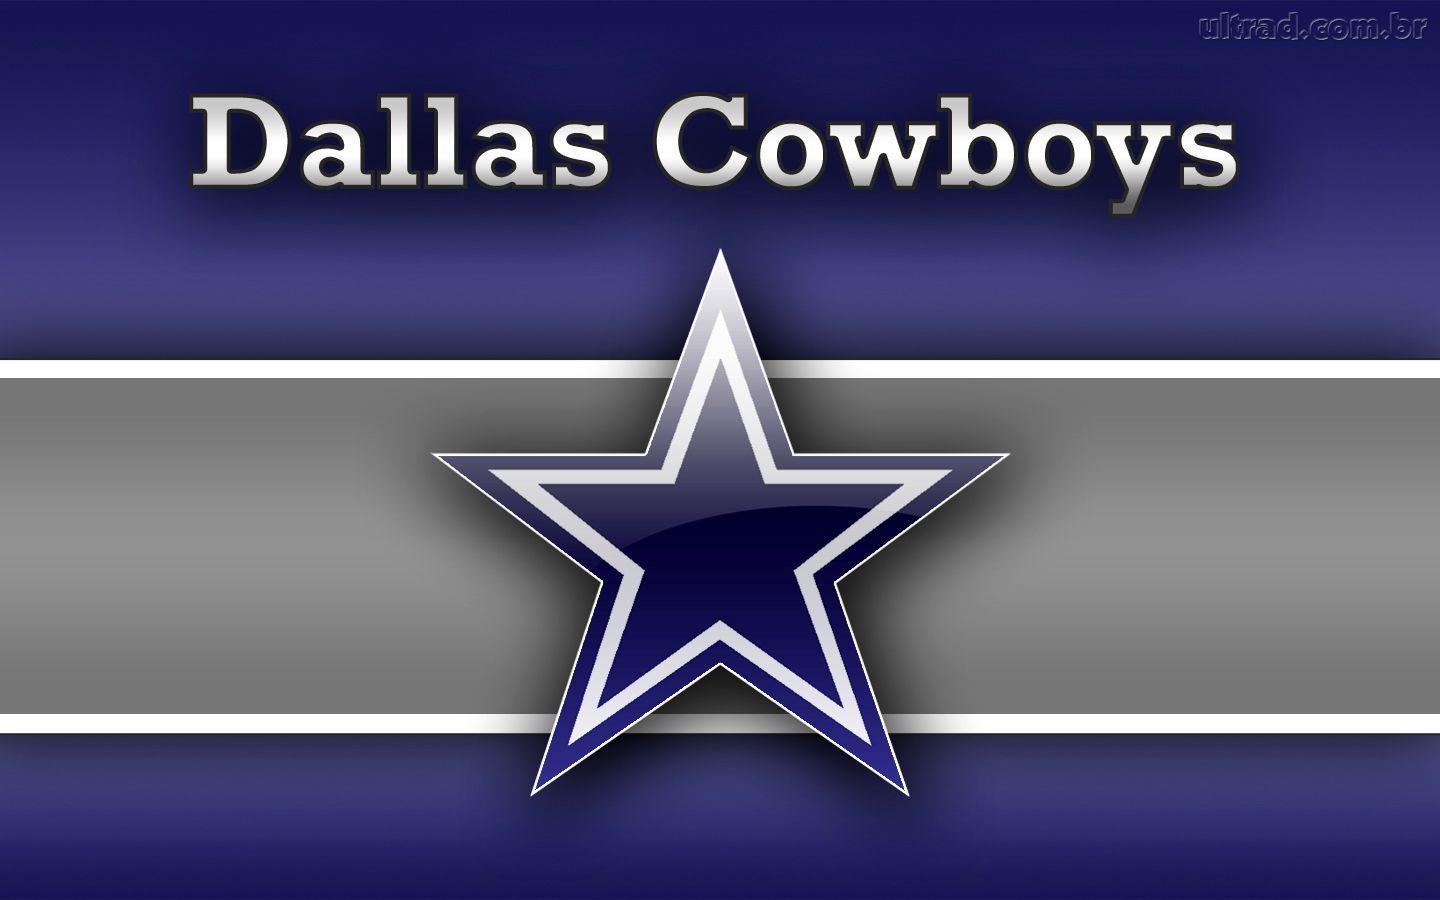 Dallas Cowboys background. Dallas Cowboys wallpaper